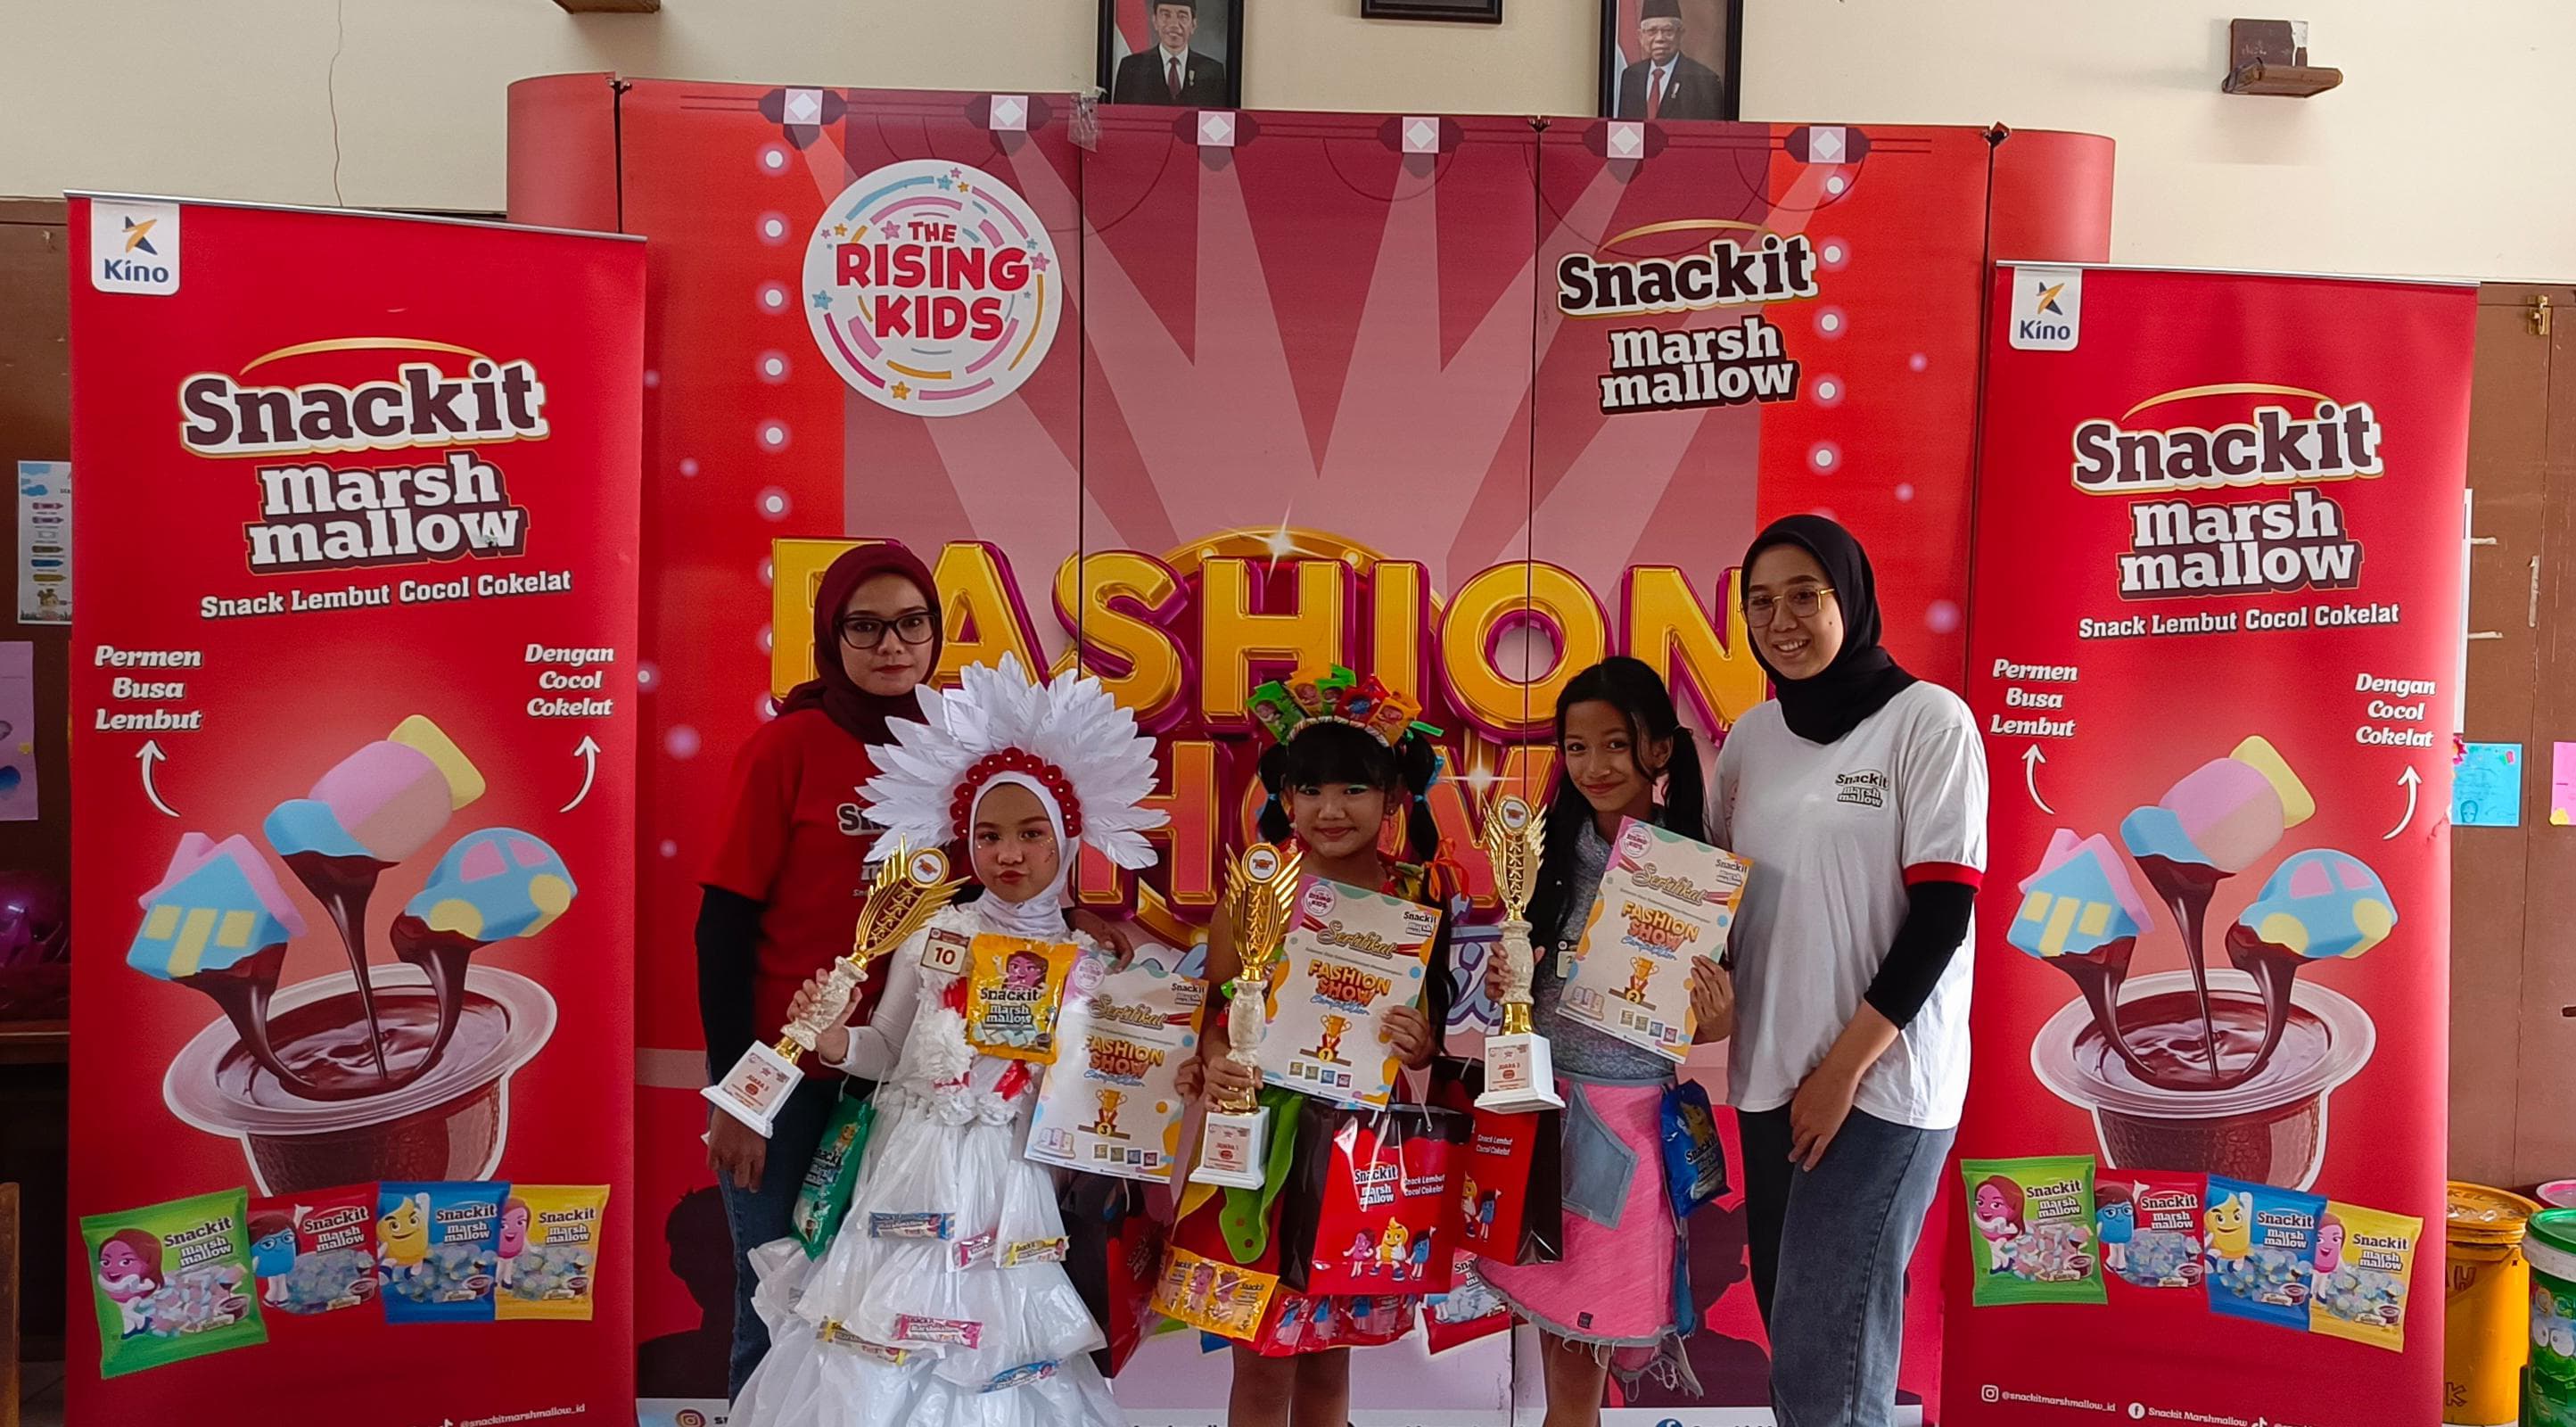 Dukung Pengembangan Bakat Anak, Snackit Marshmallow dan Cap Kaki Tiga Anak Gelar The Rising Kids 2023, Kunjungi Kota Bandung